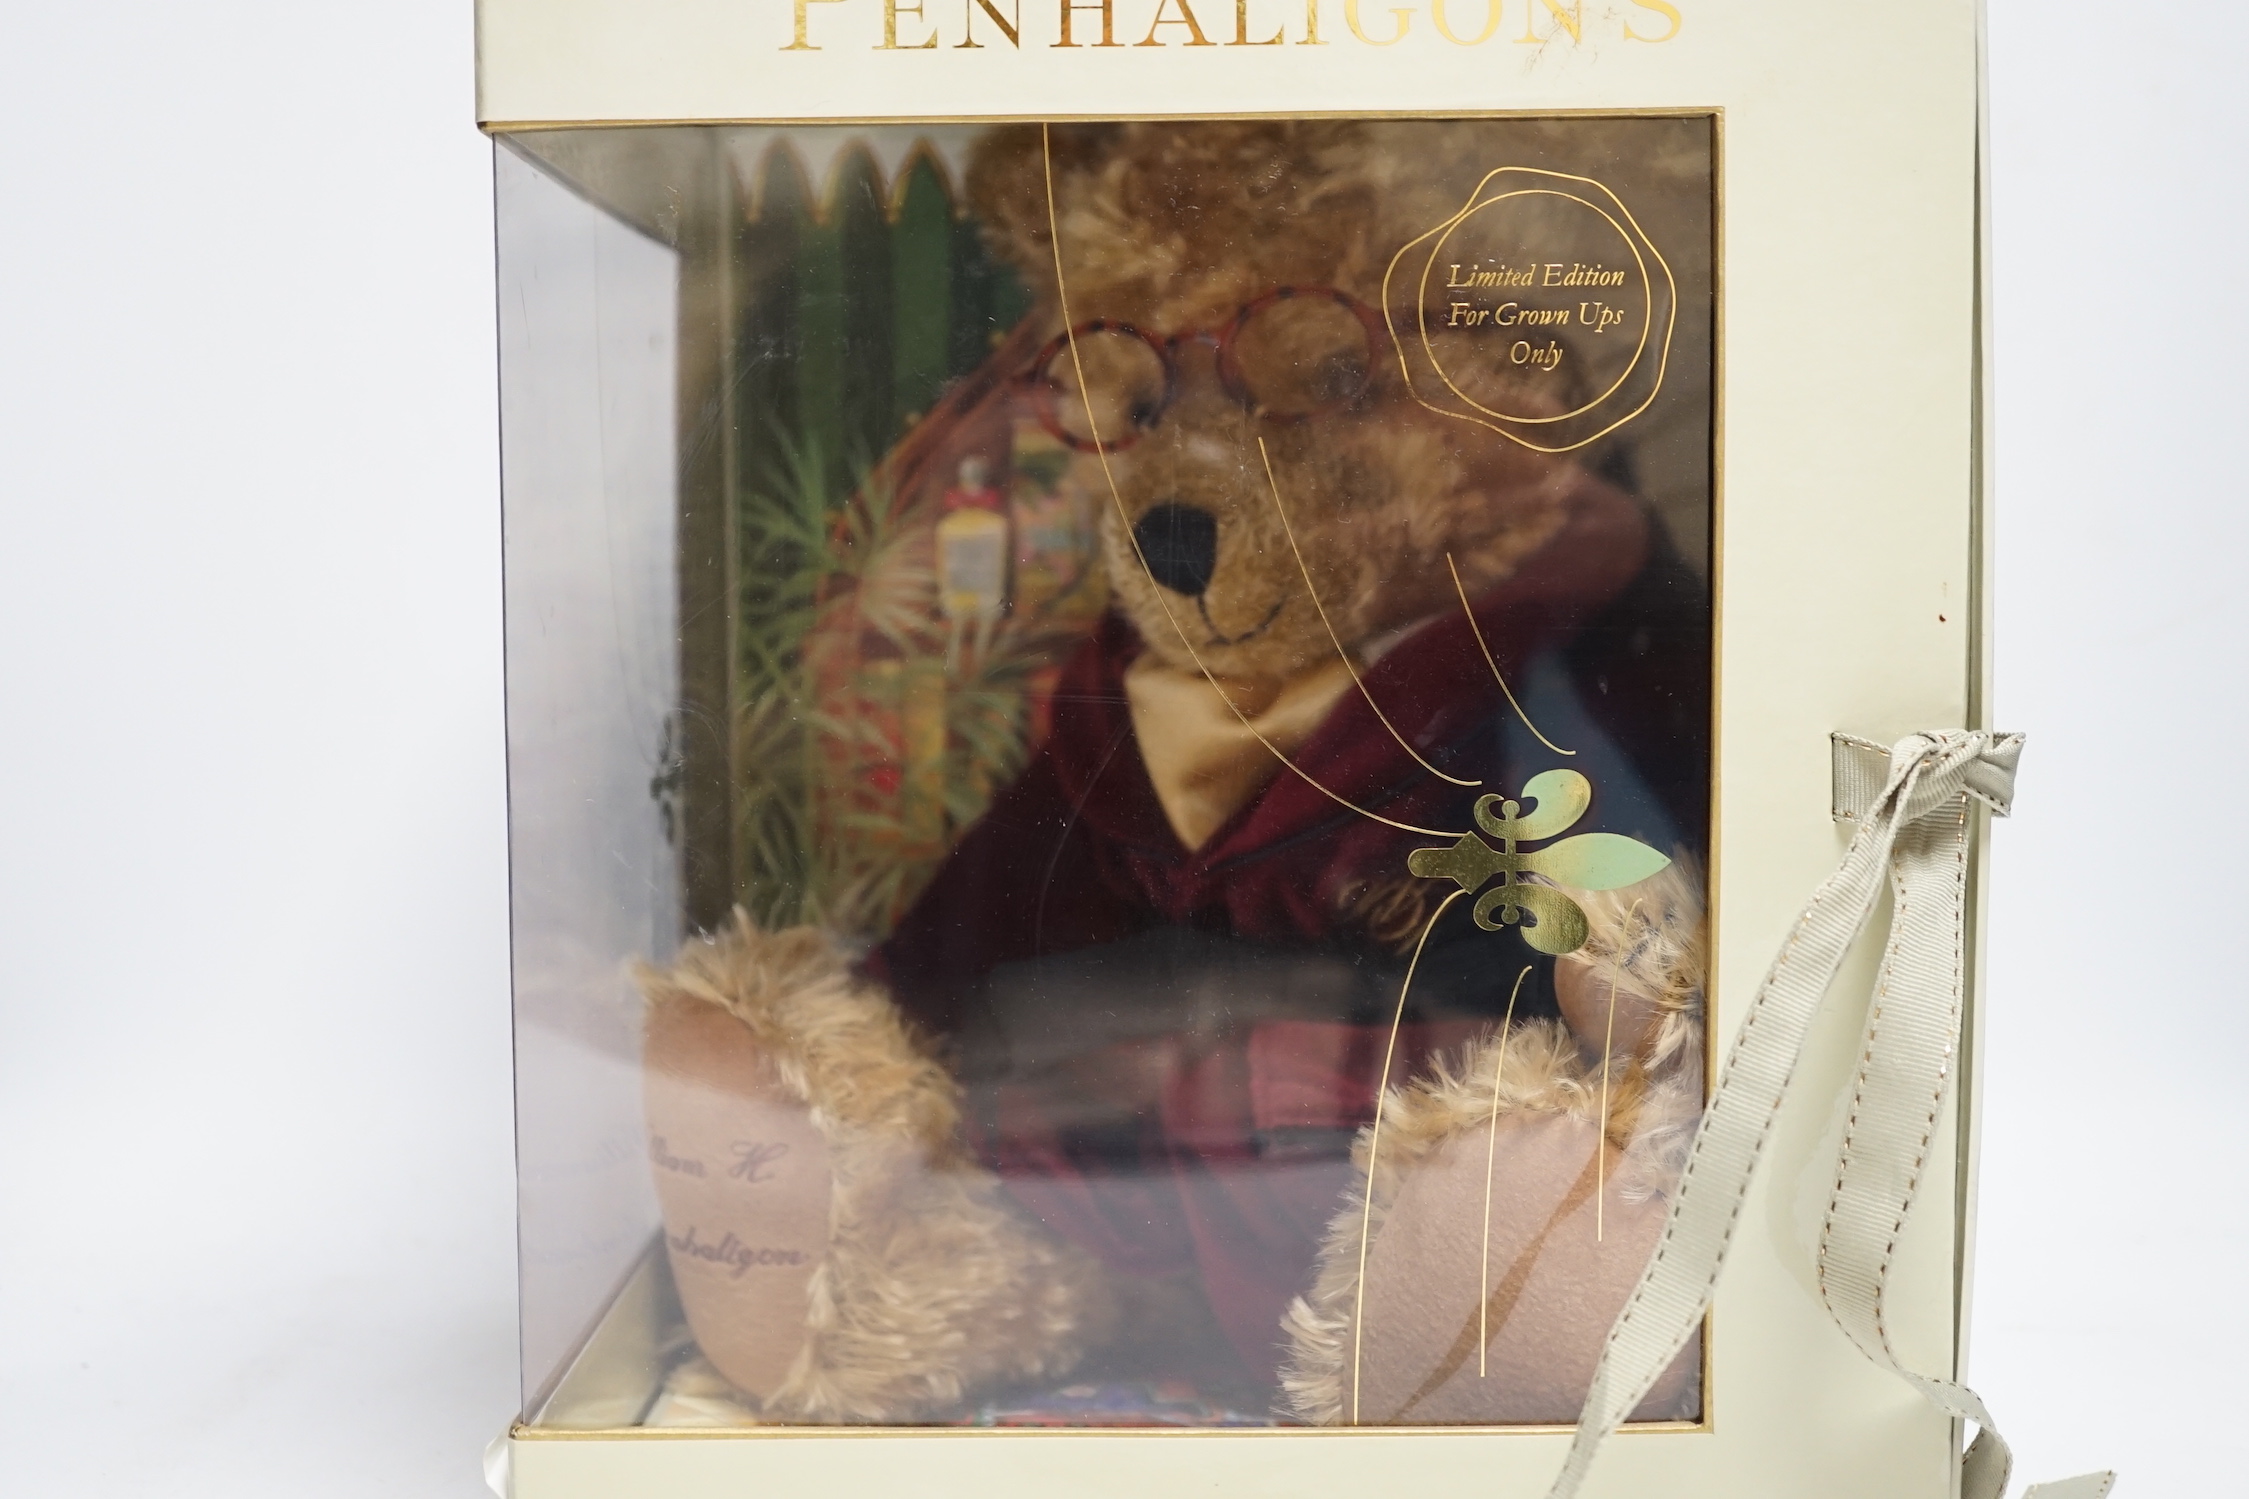 A Steiff Swarovski Poinsettia bear and a Penhaligon Special Edition bear